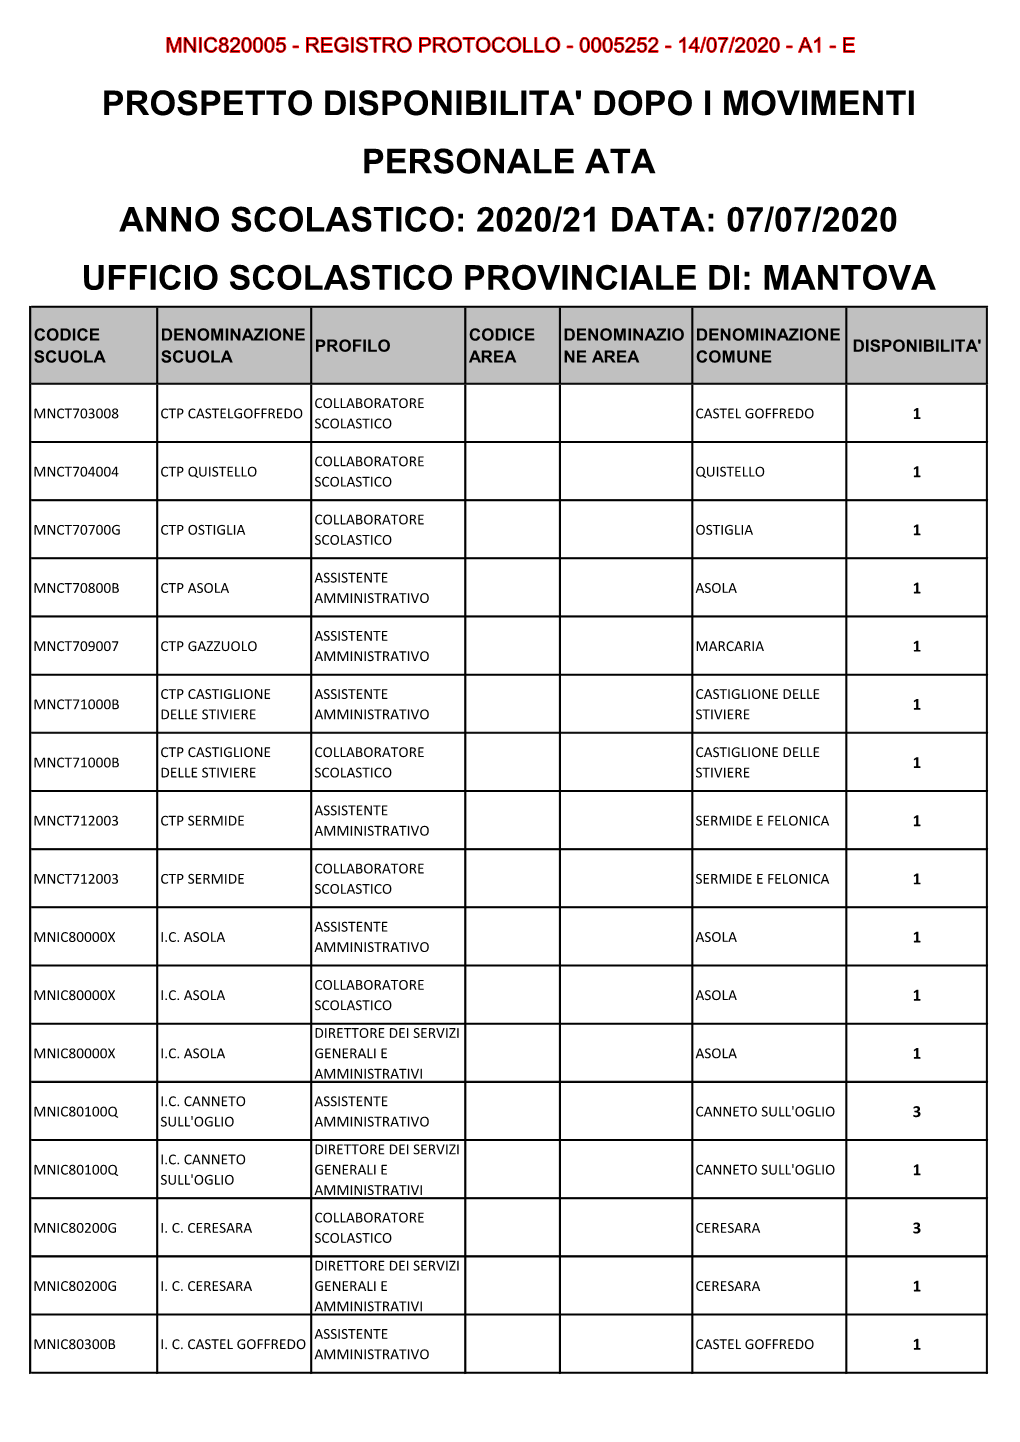 Prospetto Disponibilita' Dopo I Movimenti Personale Ata Anno Scolastico: 2020/21 Data: 07/07/2020 Ufficio Scolastico Provinciale Di: Mantova